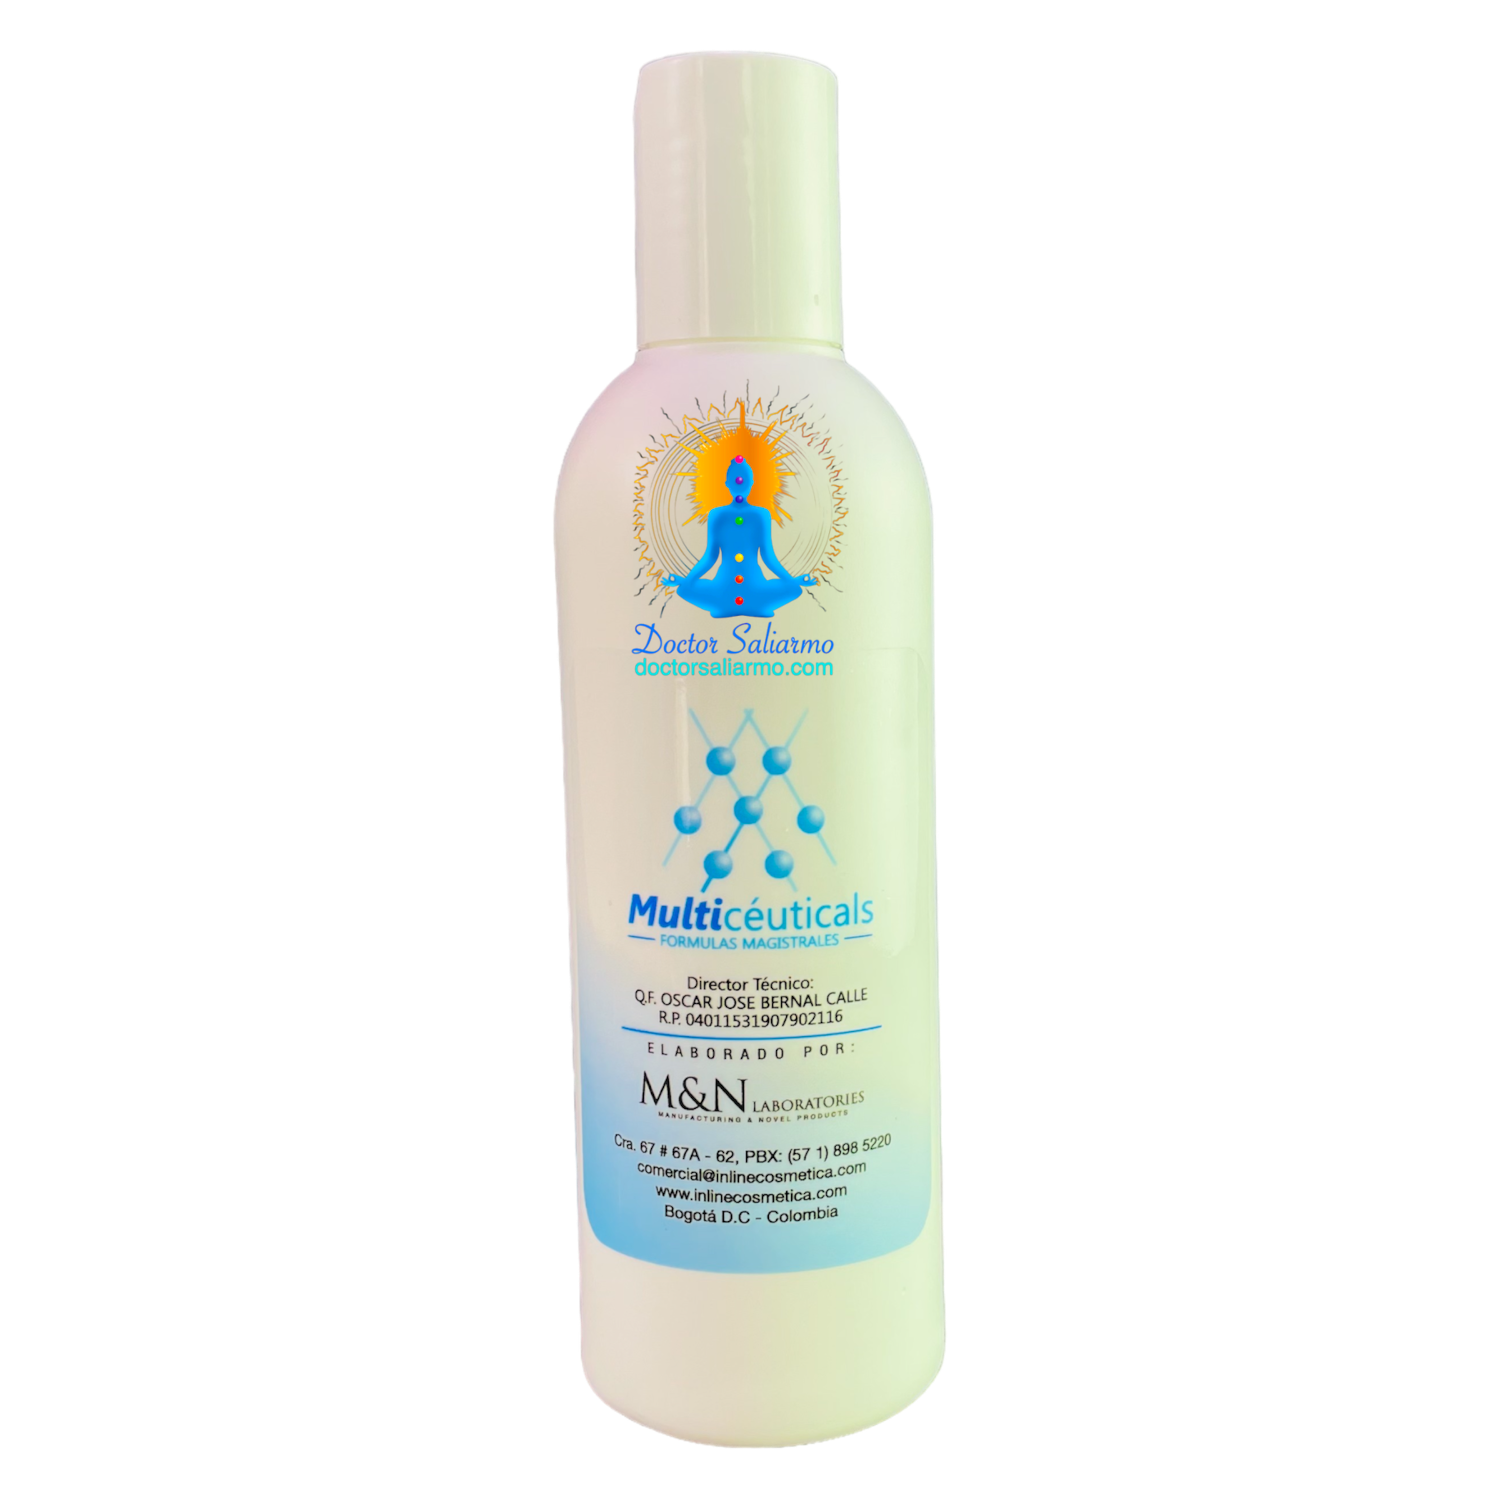 Gel hidratante de Aloe Vera y Vitamina E de Multiceuticals ® hidrata y calma especialmente util en protocolos de manejo del acne.